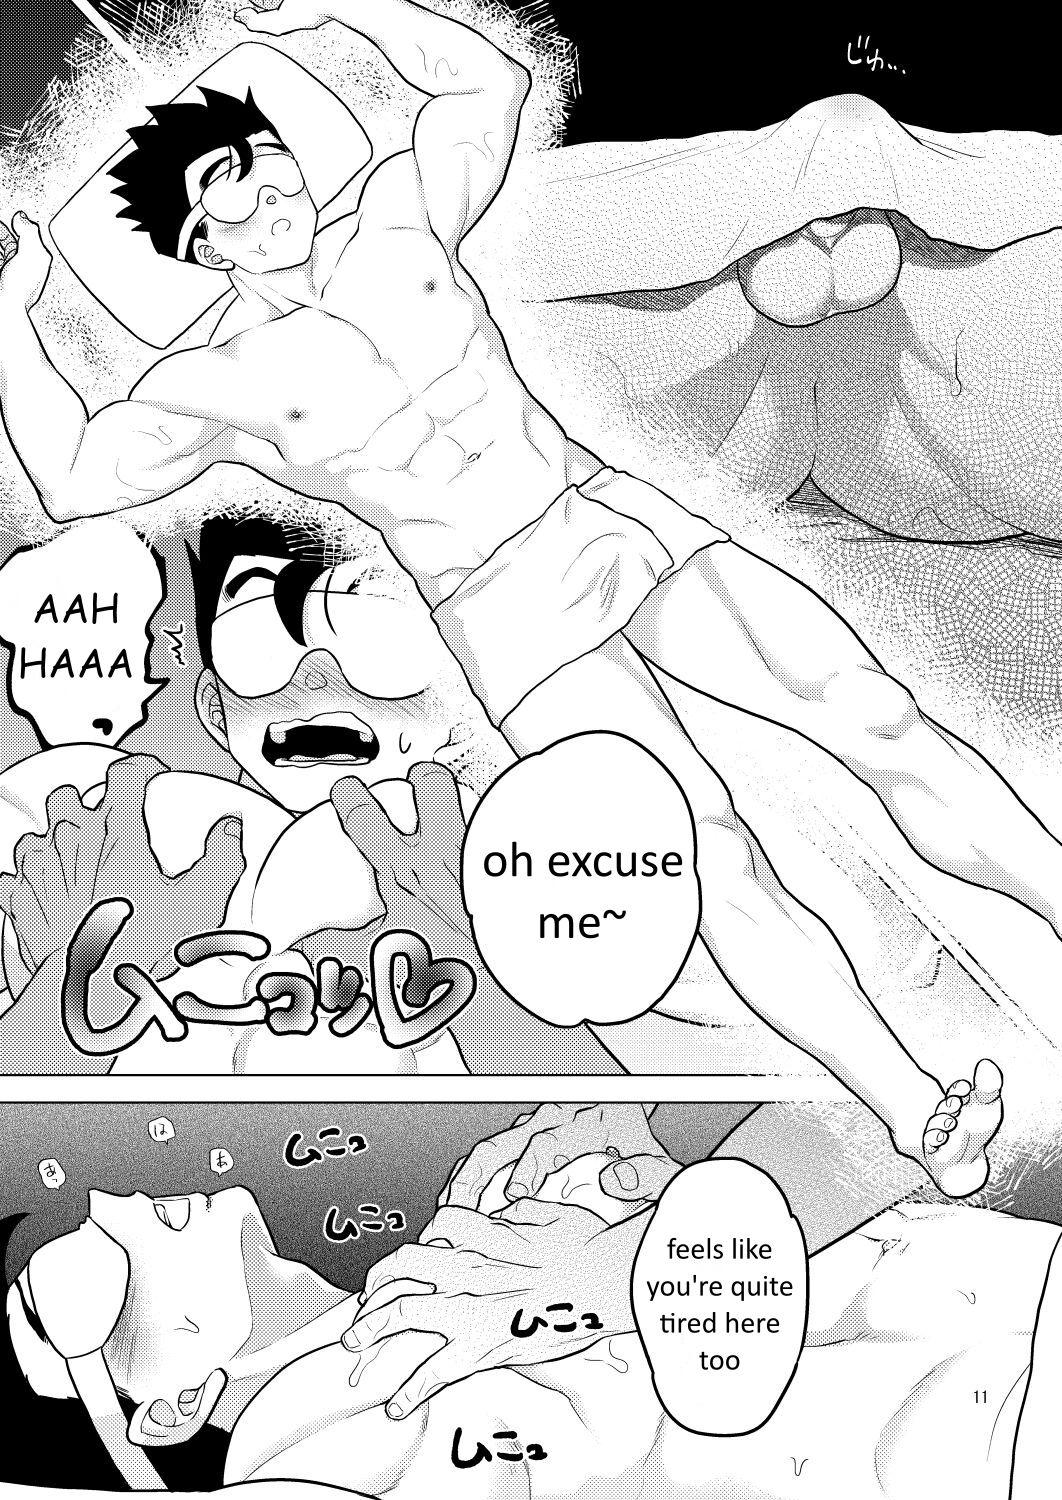 Masturbandose Gokuraku e Youkoso - Dragon ball z 18yearsold - Page 10